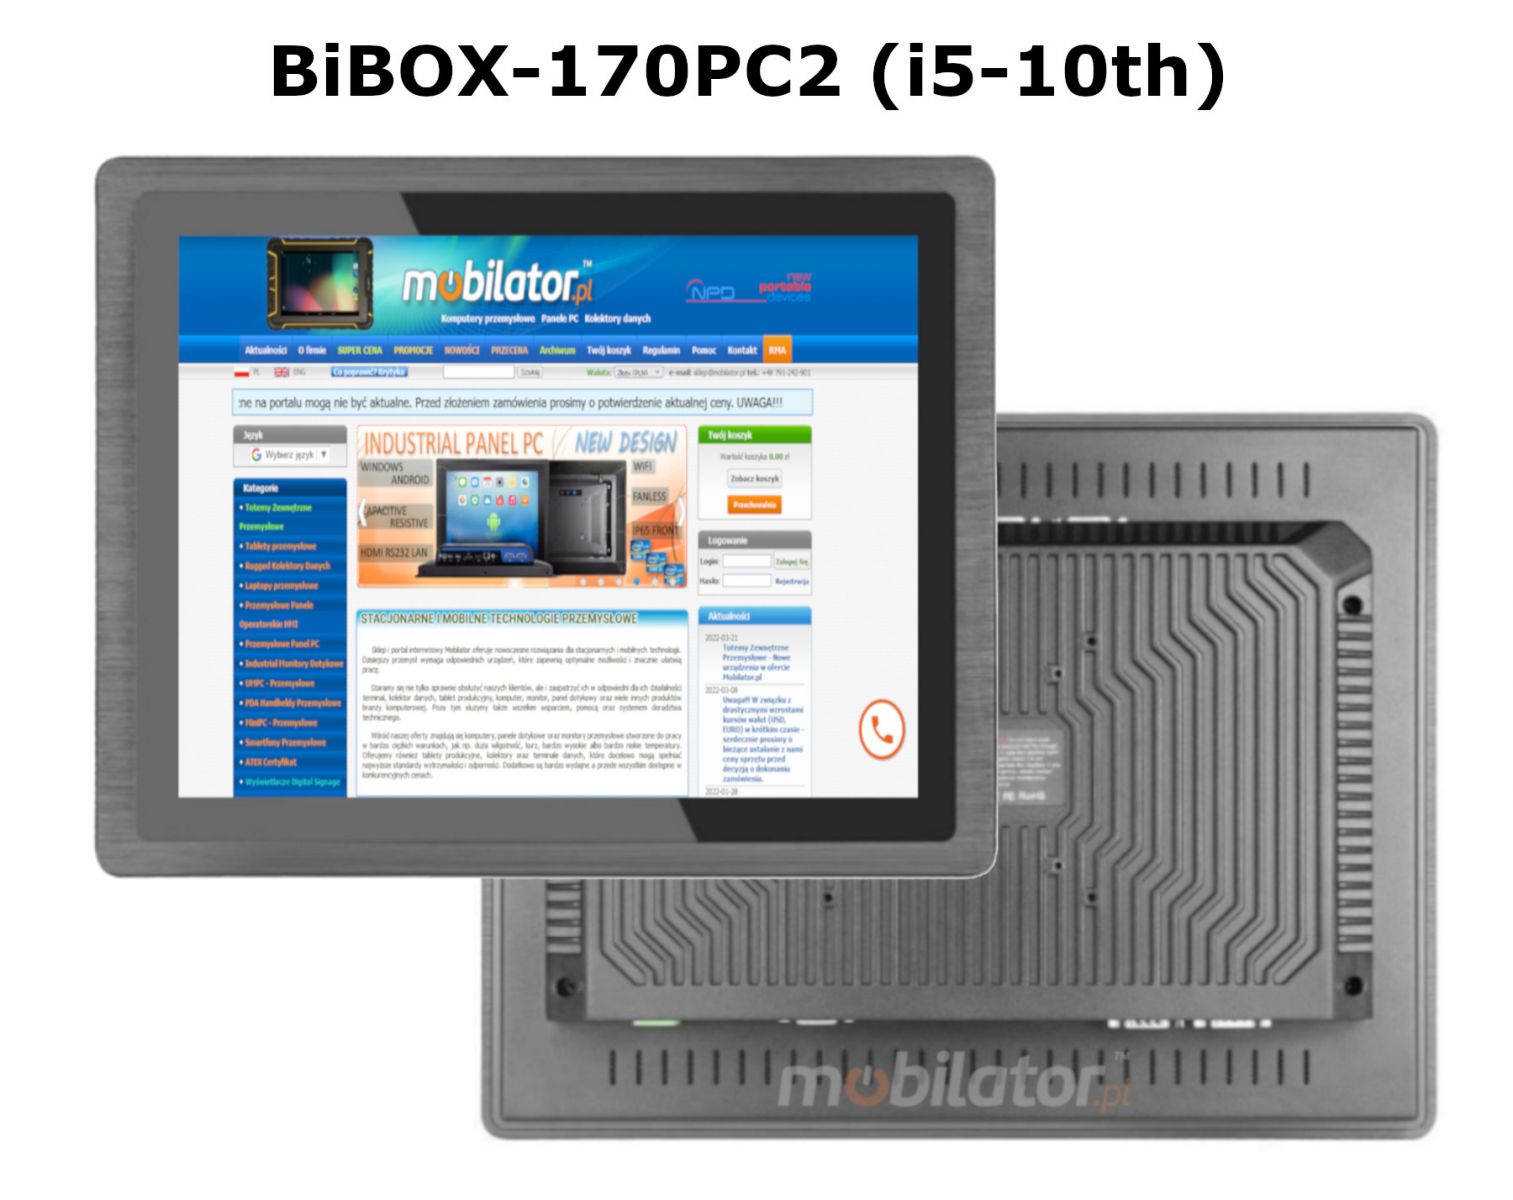 BIBOX-170PC2 odporny i pojemny komputer panelowy z WiFi i Bluetooth